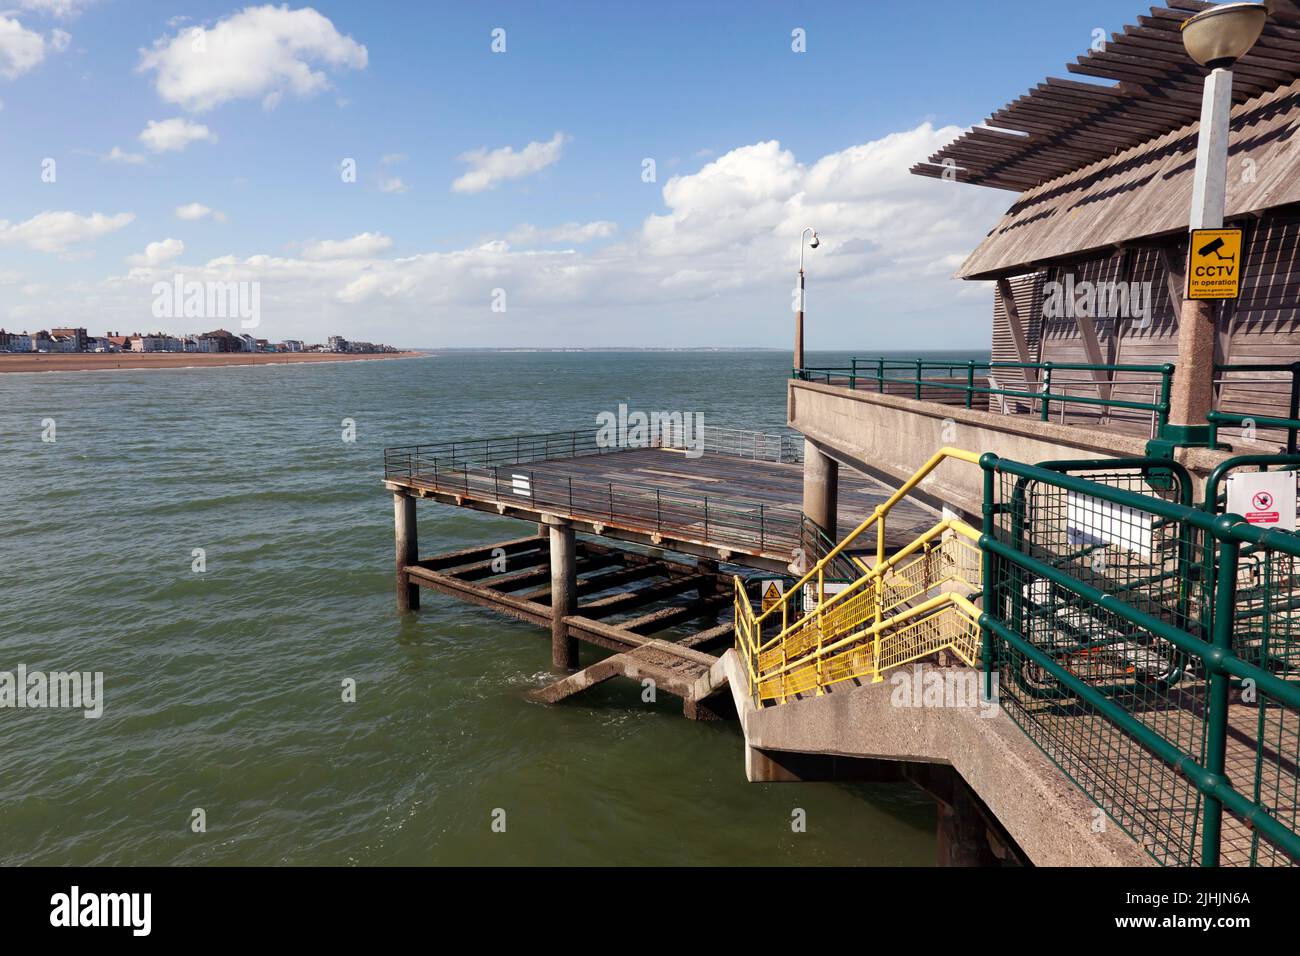 Deal Pier, con la cubierta del medio expuesta durante la marea baja, mirando hacia el Castillo Sandown y Sandwich Bay Foto de stock